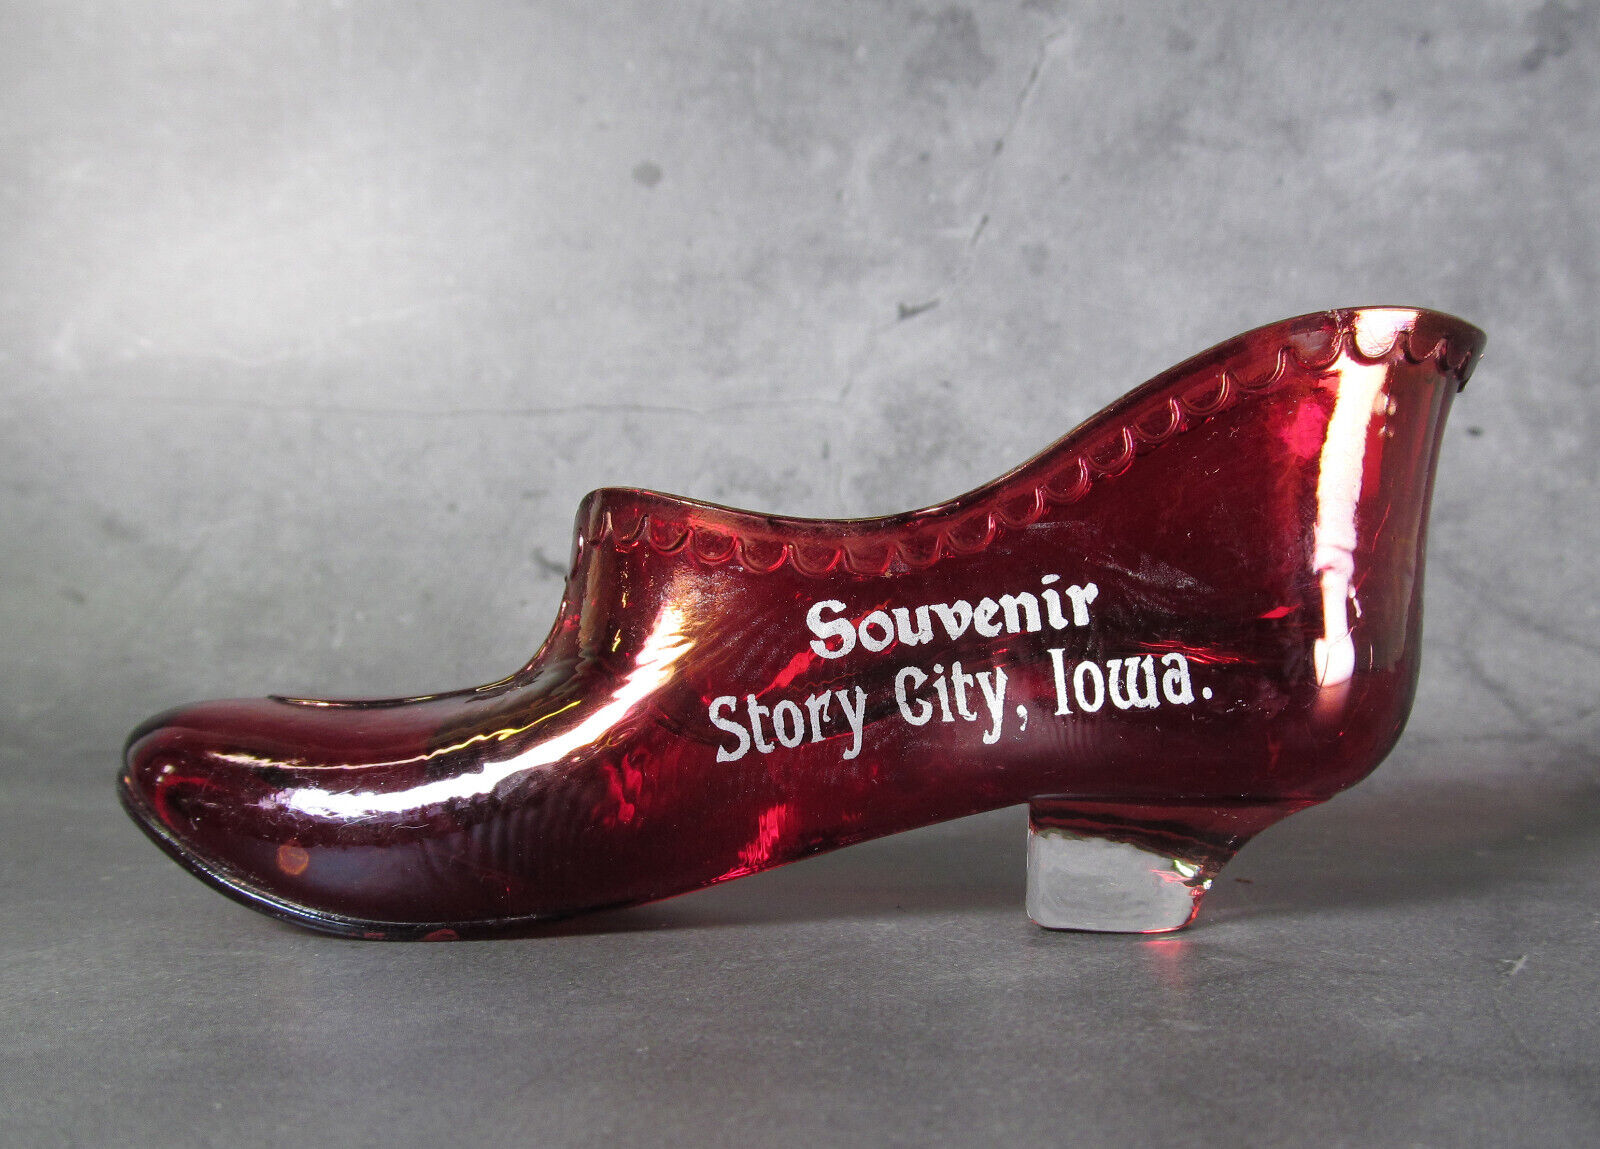 Story City, Iowa, IA - Antique Souvenir Glass Shoe